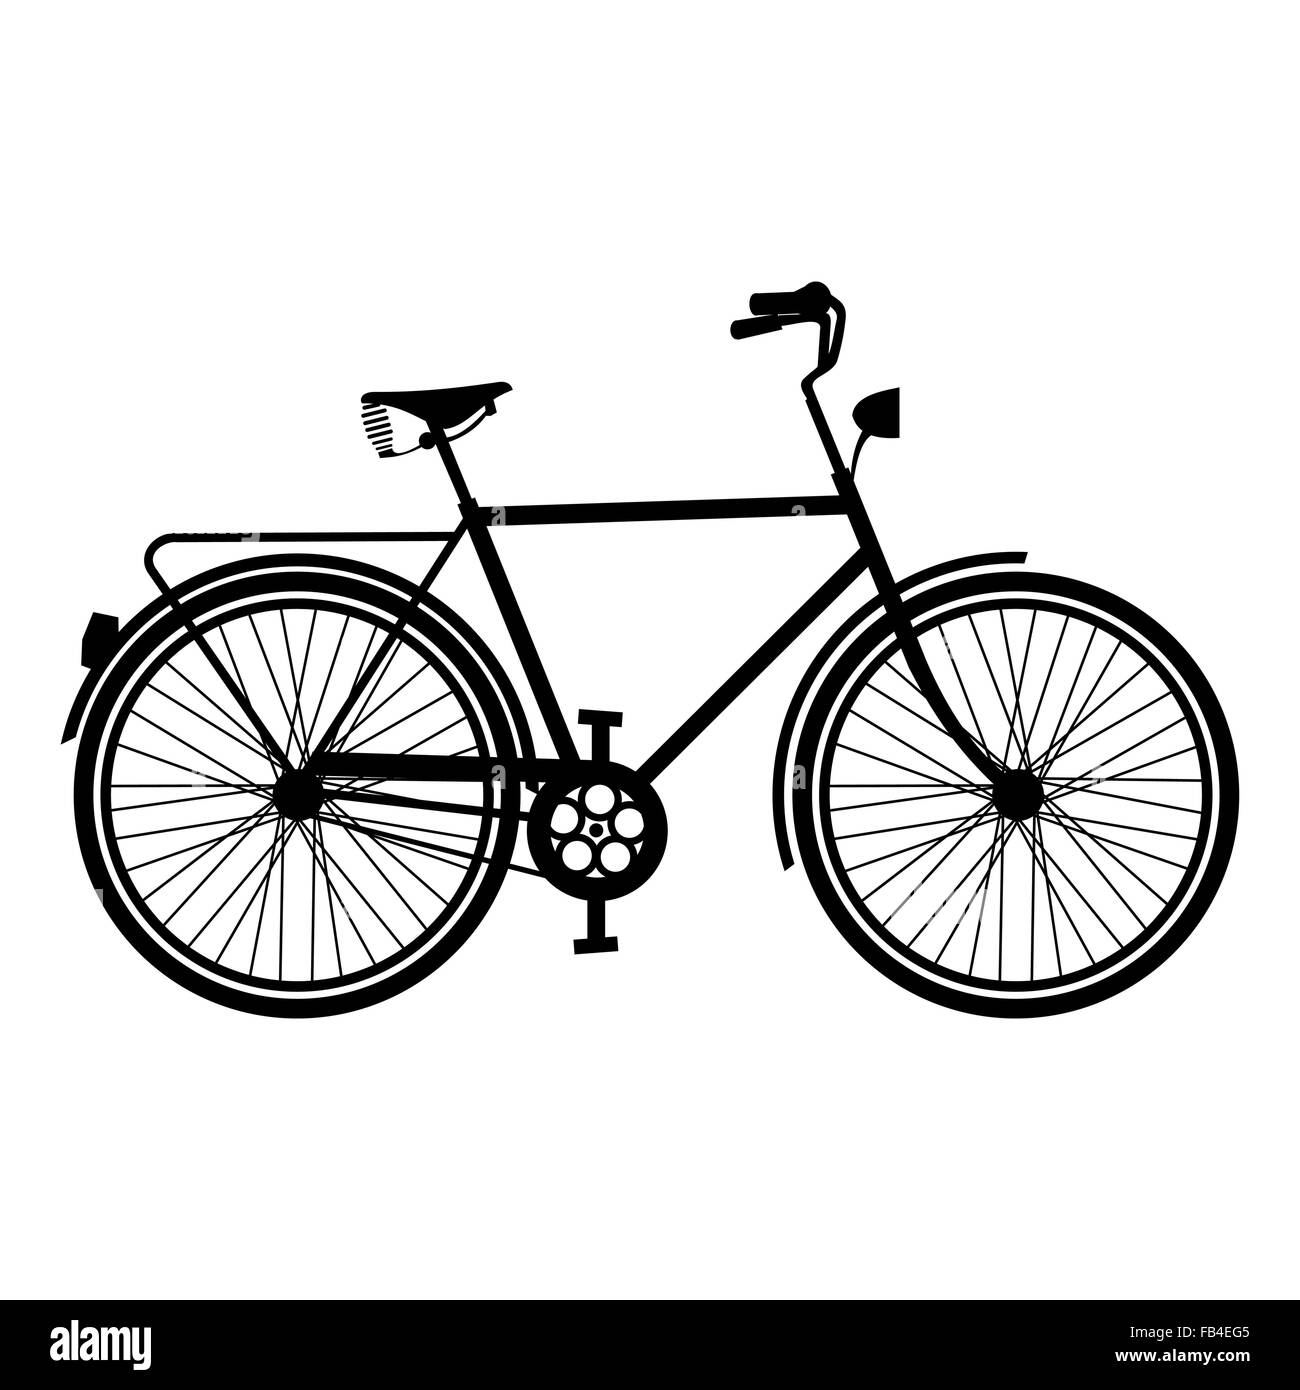 Retrò bike silhouette concetto, isolato contorno di bicicletta su sfondo bianco. EPS10 vettore. Illustrazione Vettoriale